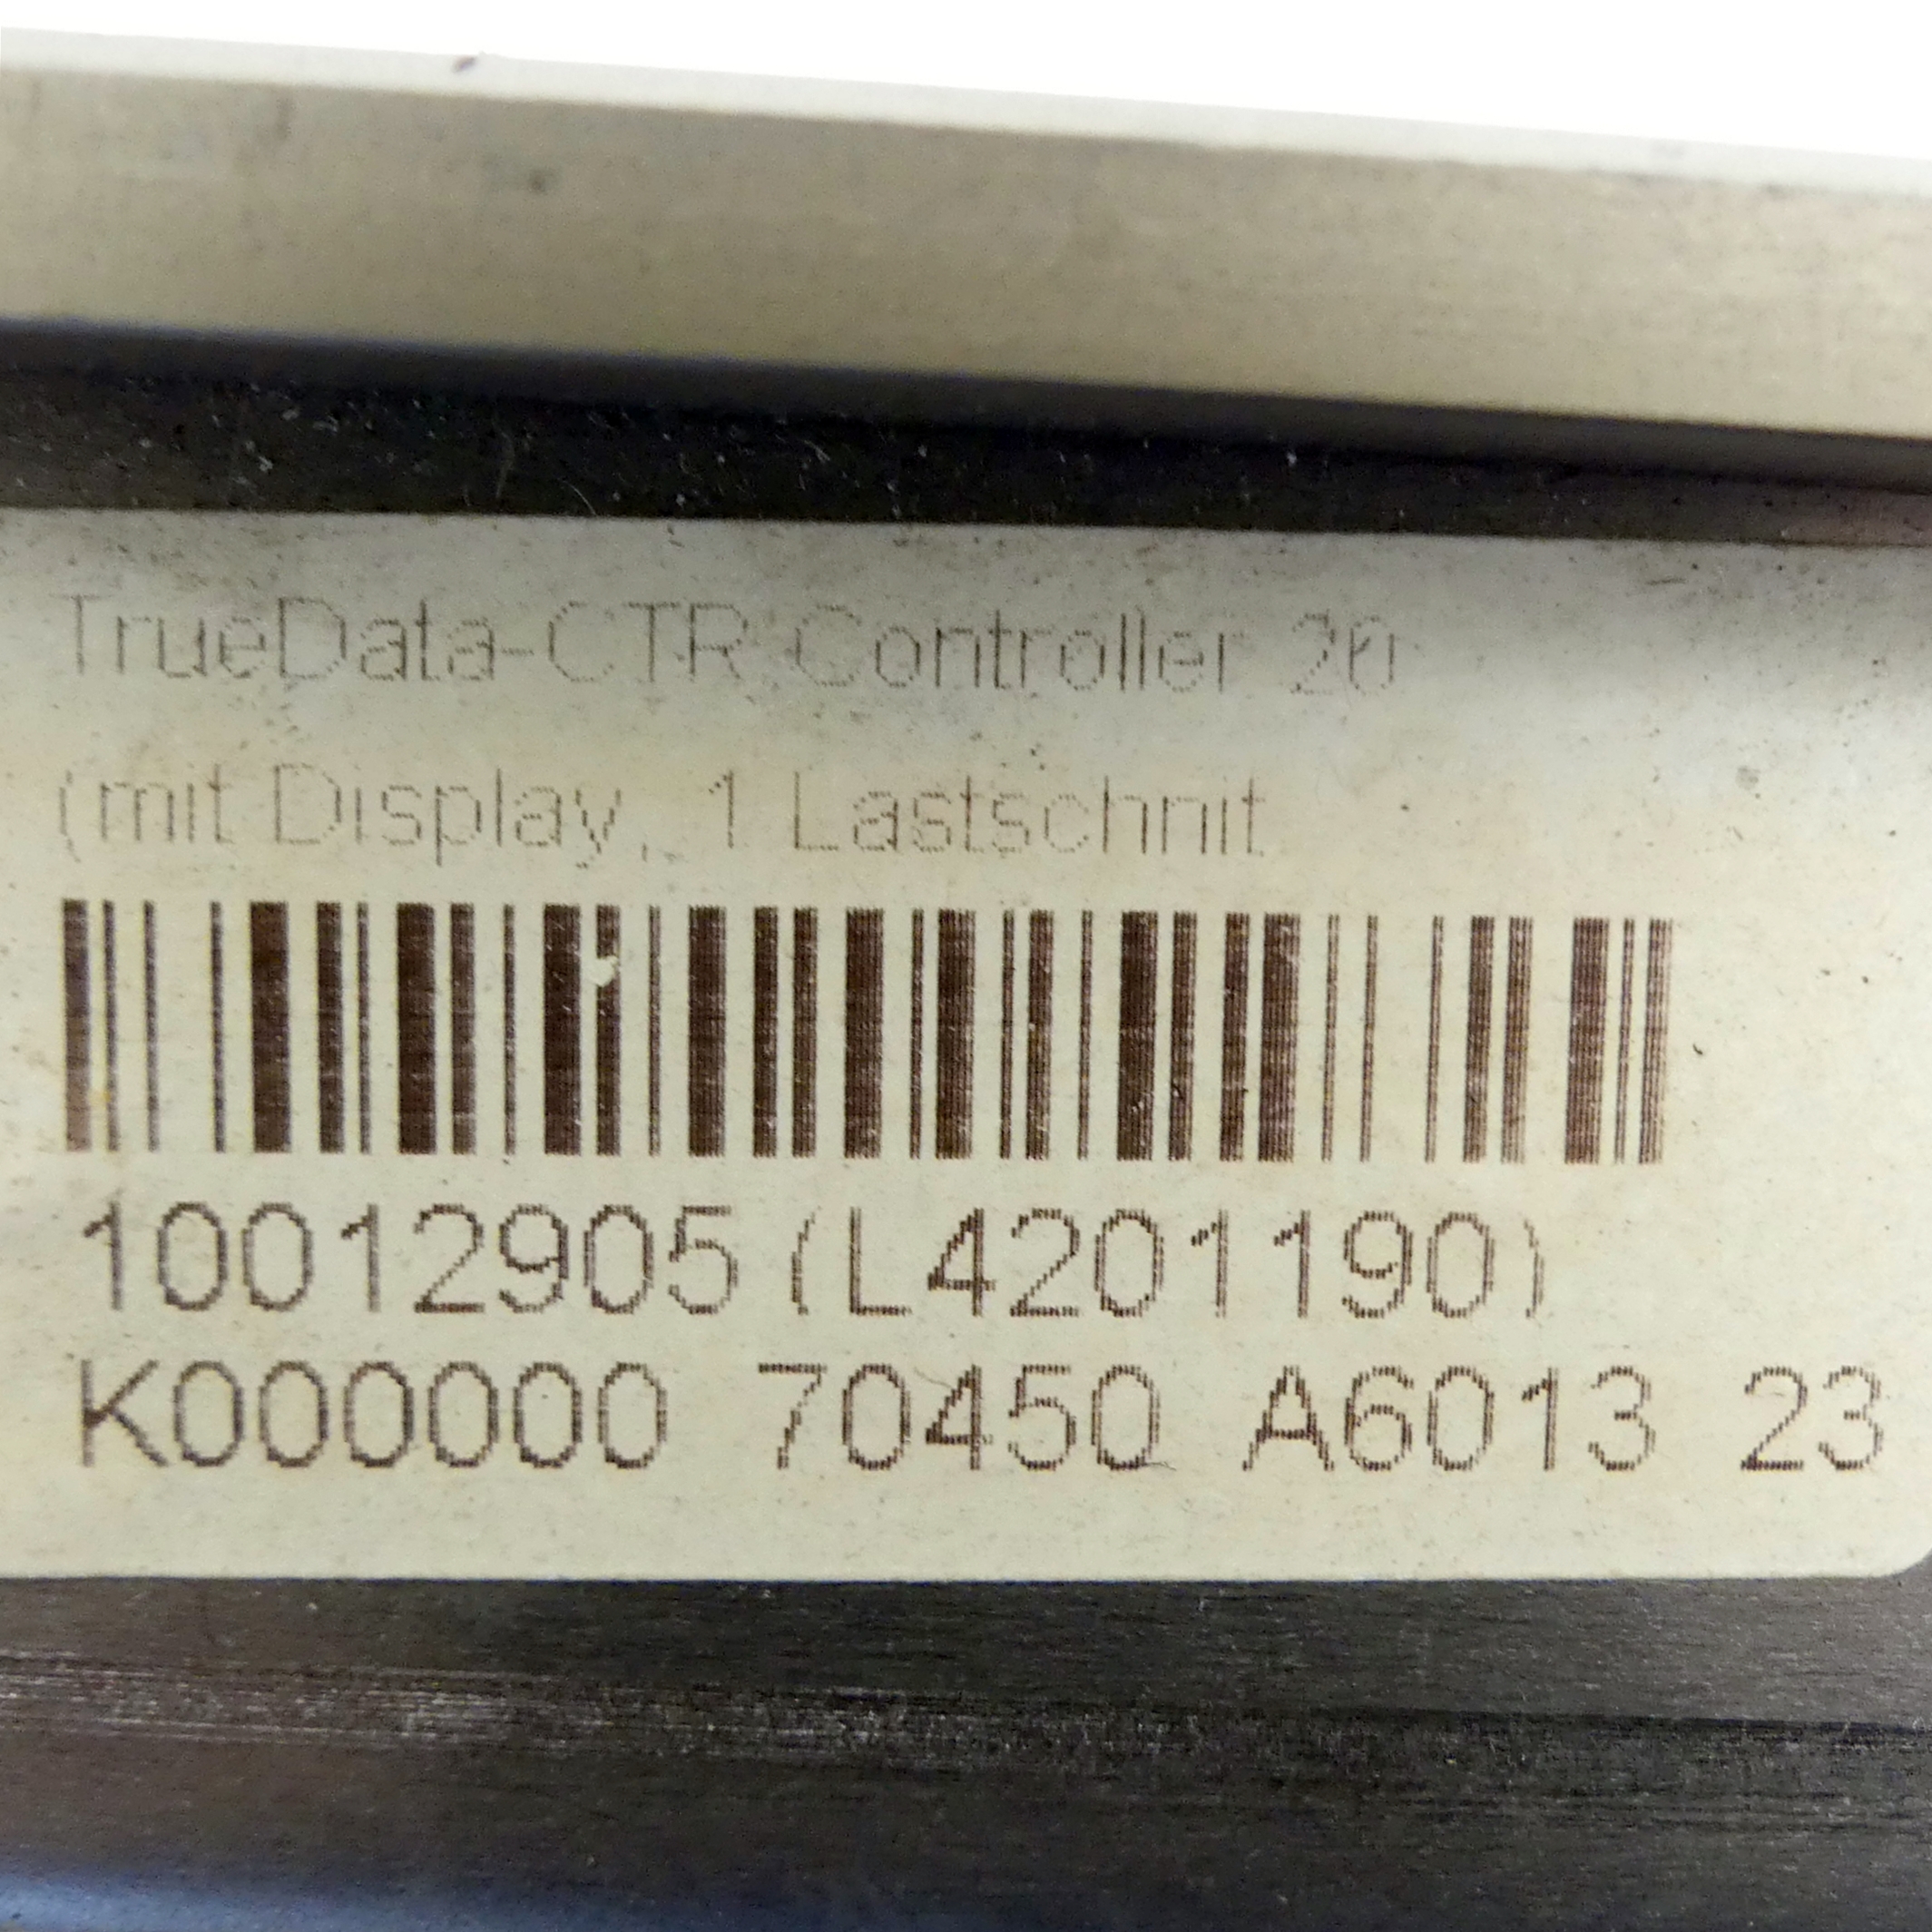 TrueData-CTR Controller 20 